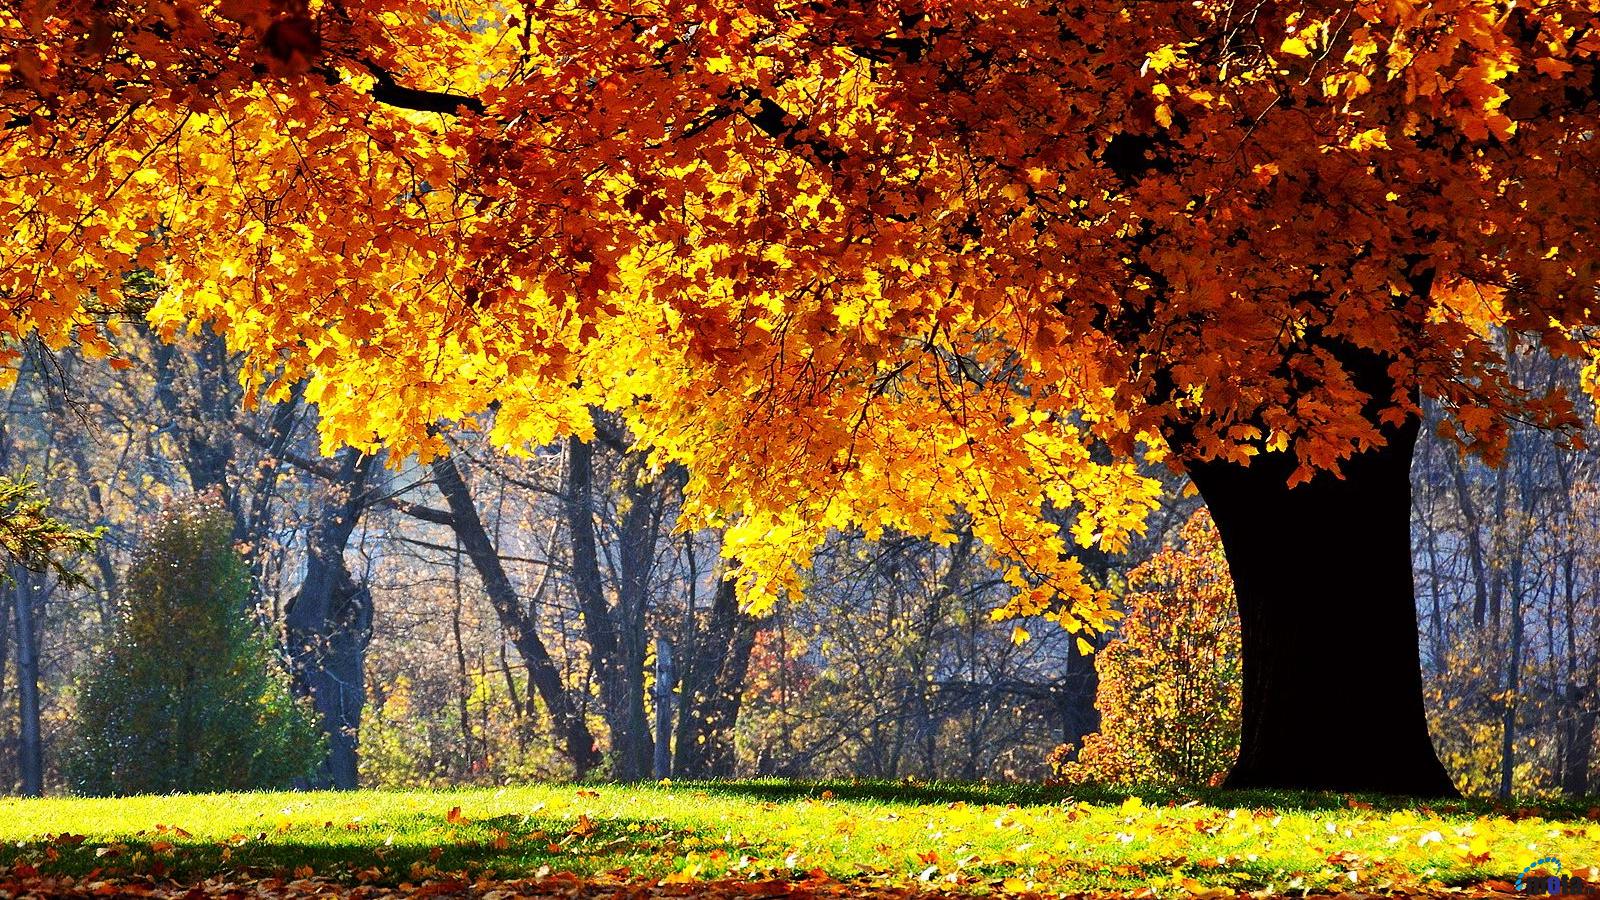 Tận hưởng những khoảnh khắc tuyệt đẹp của mùa thu với những hình nền mùa thu tuyệt đẹp. Với những bức ảnh về những thửa đất rực rỡ sắc thu, các chiếc lá vàng rơi rụng, hứa hẹn sẽ giúp bạn tận hưởng một cảm giác bình yên và thư thái tuyệt vời.